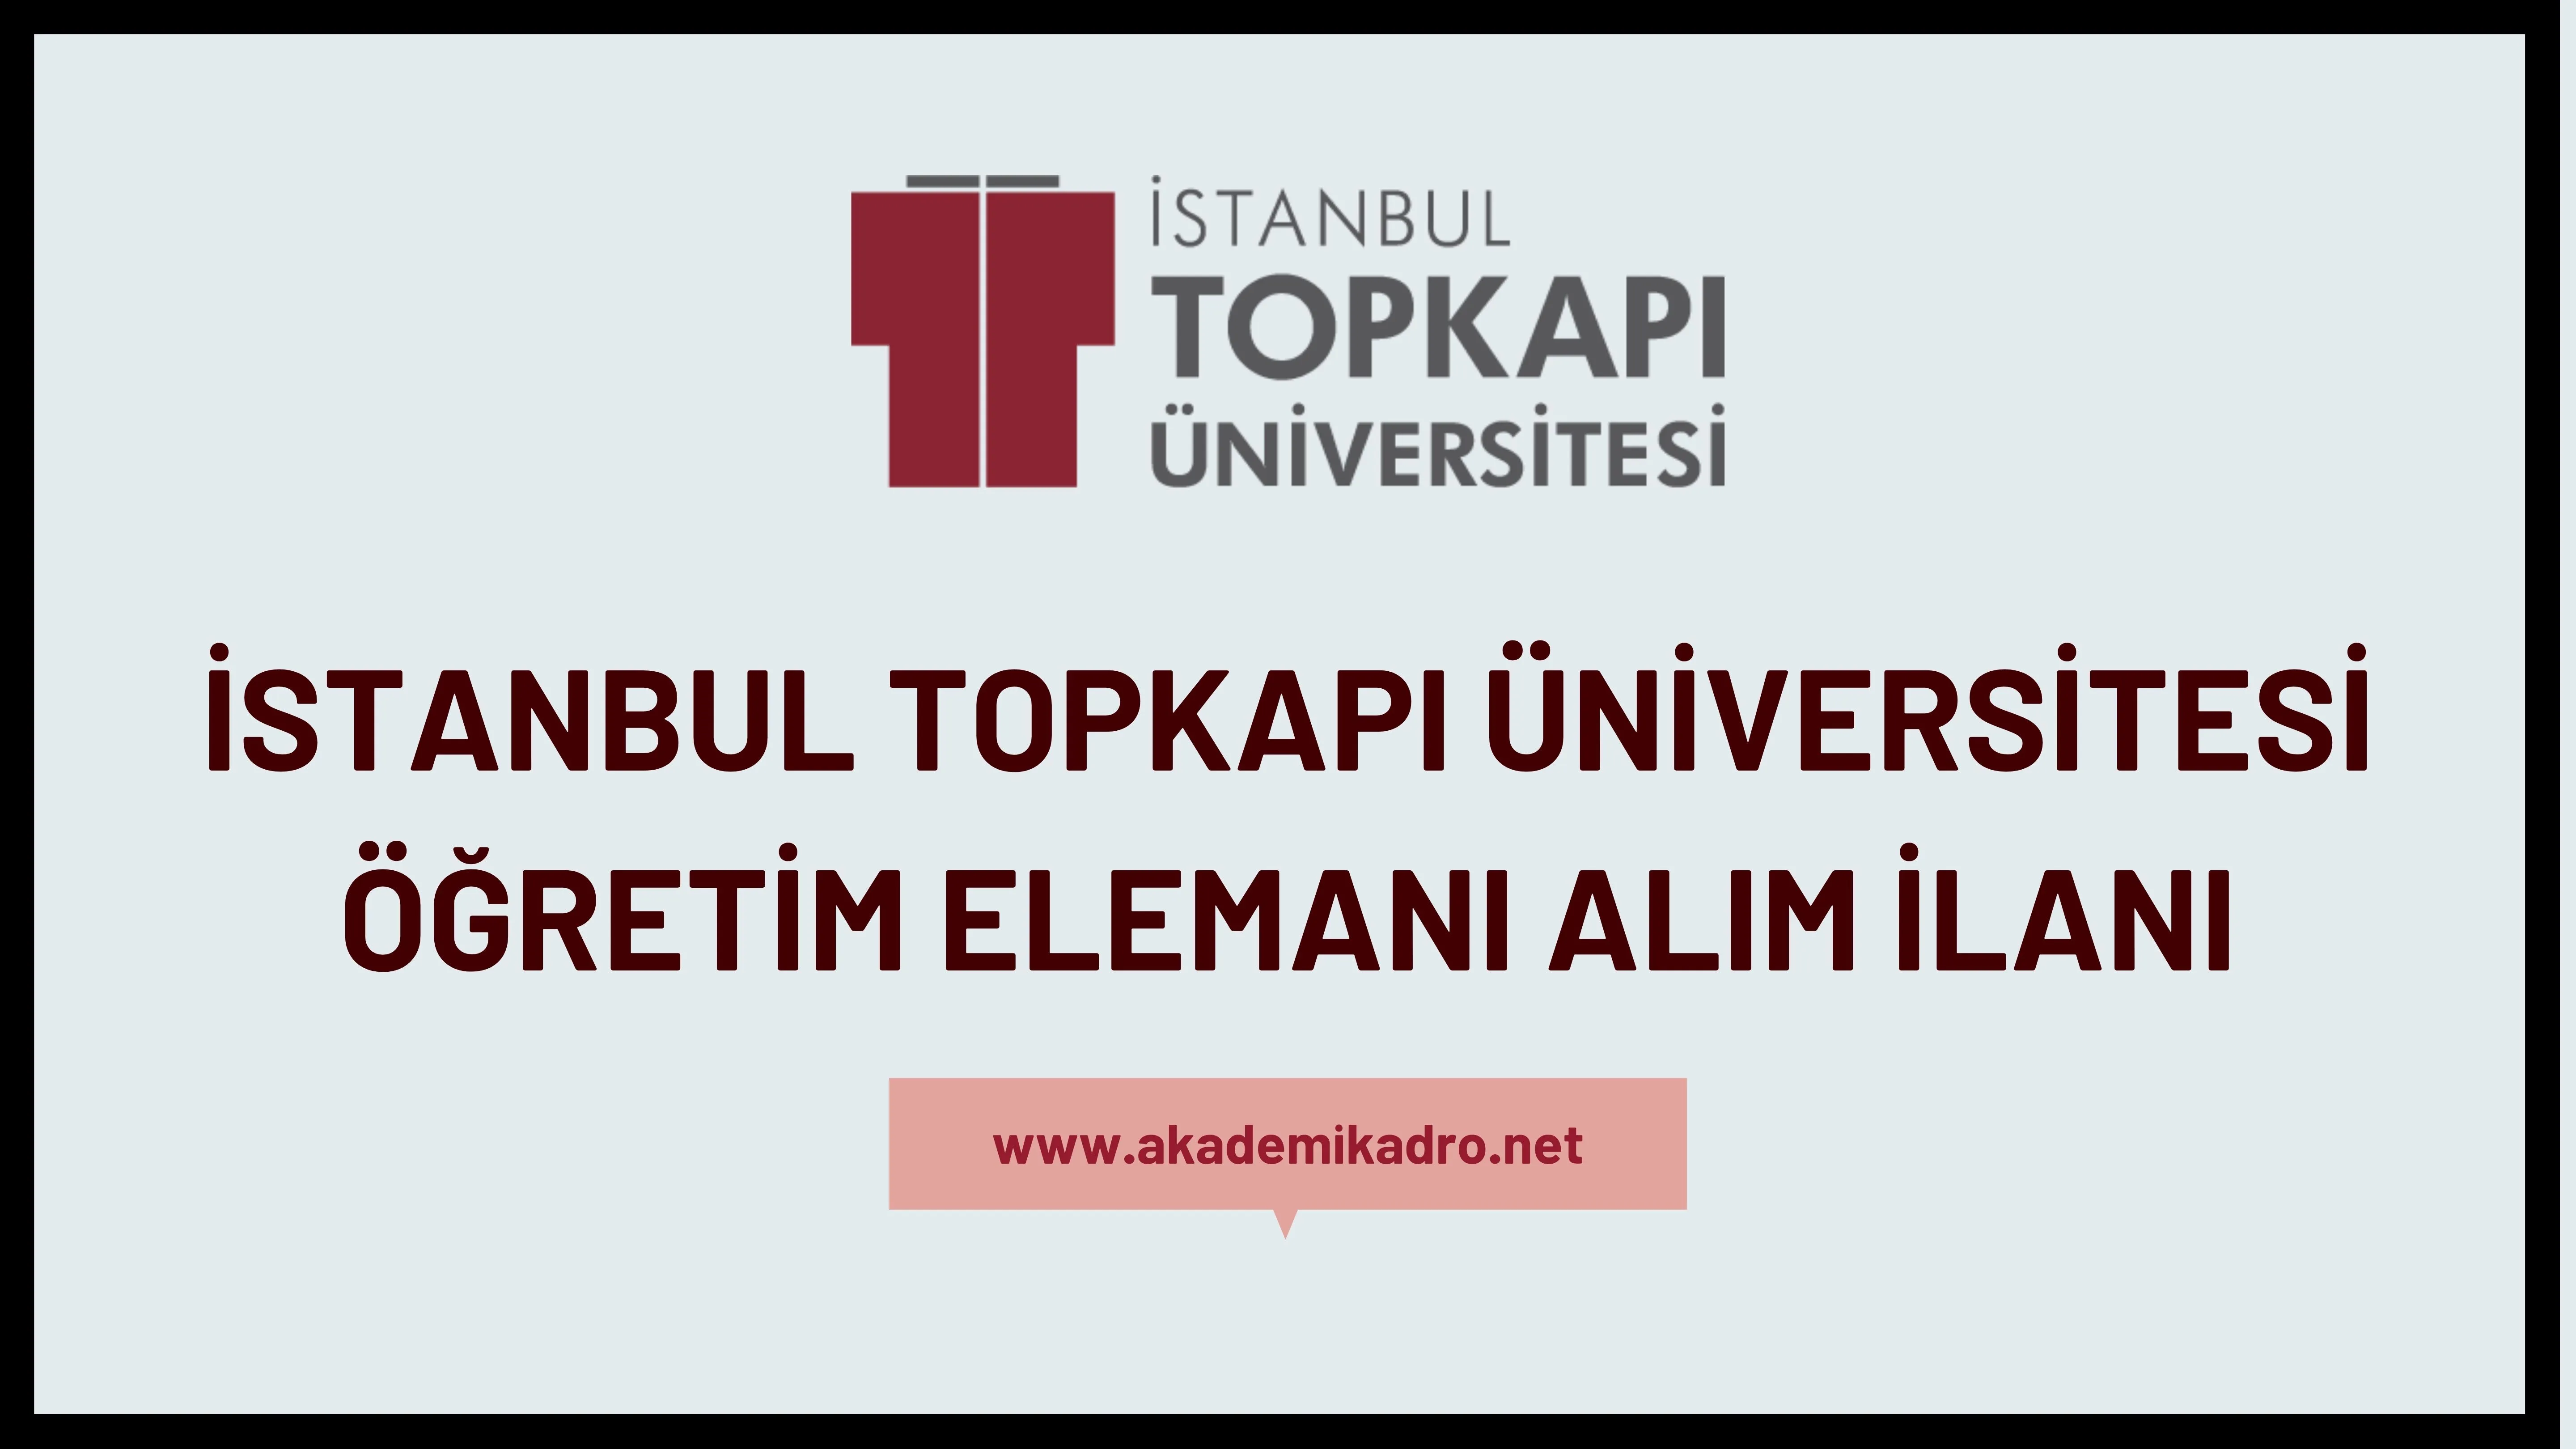 İstanbul Topkapı Üniversitesi Araştırma görevlisi, öğretim görevlisi ve öğretim üyesi alacaktır.